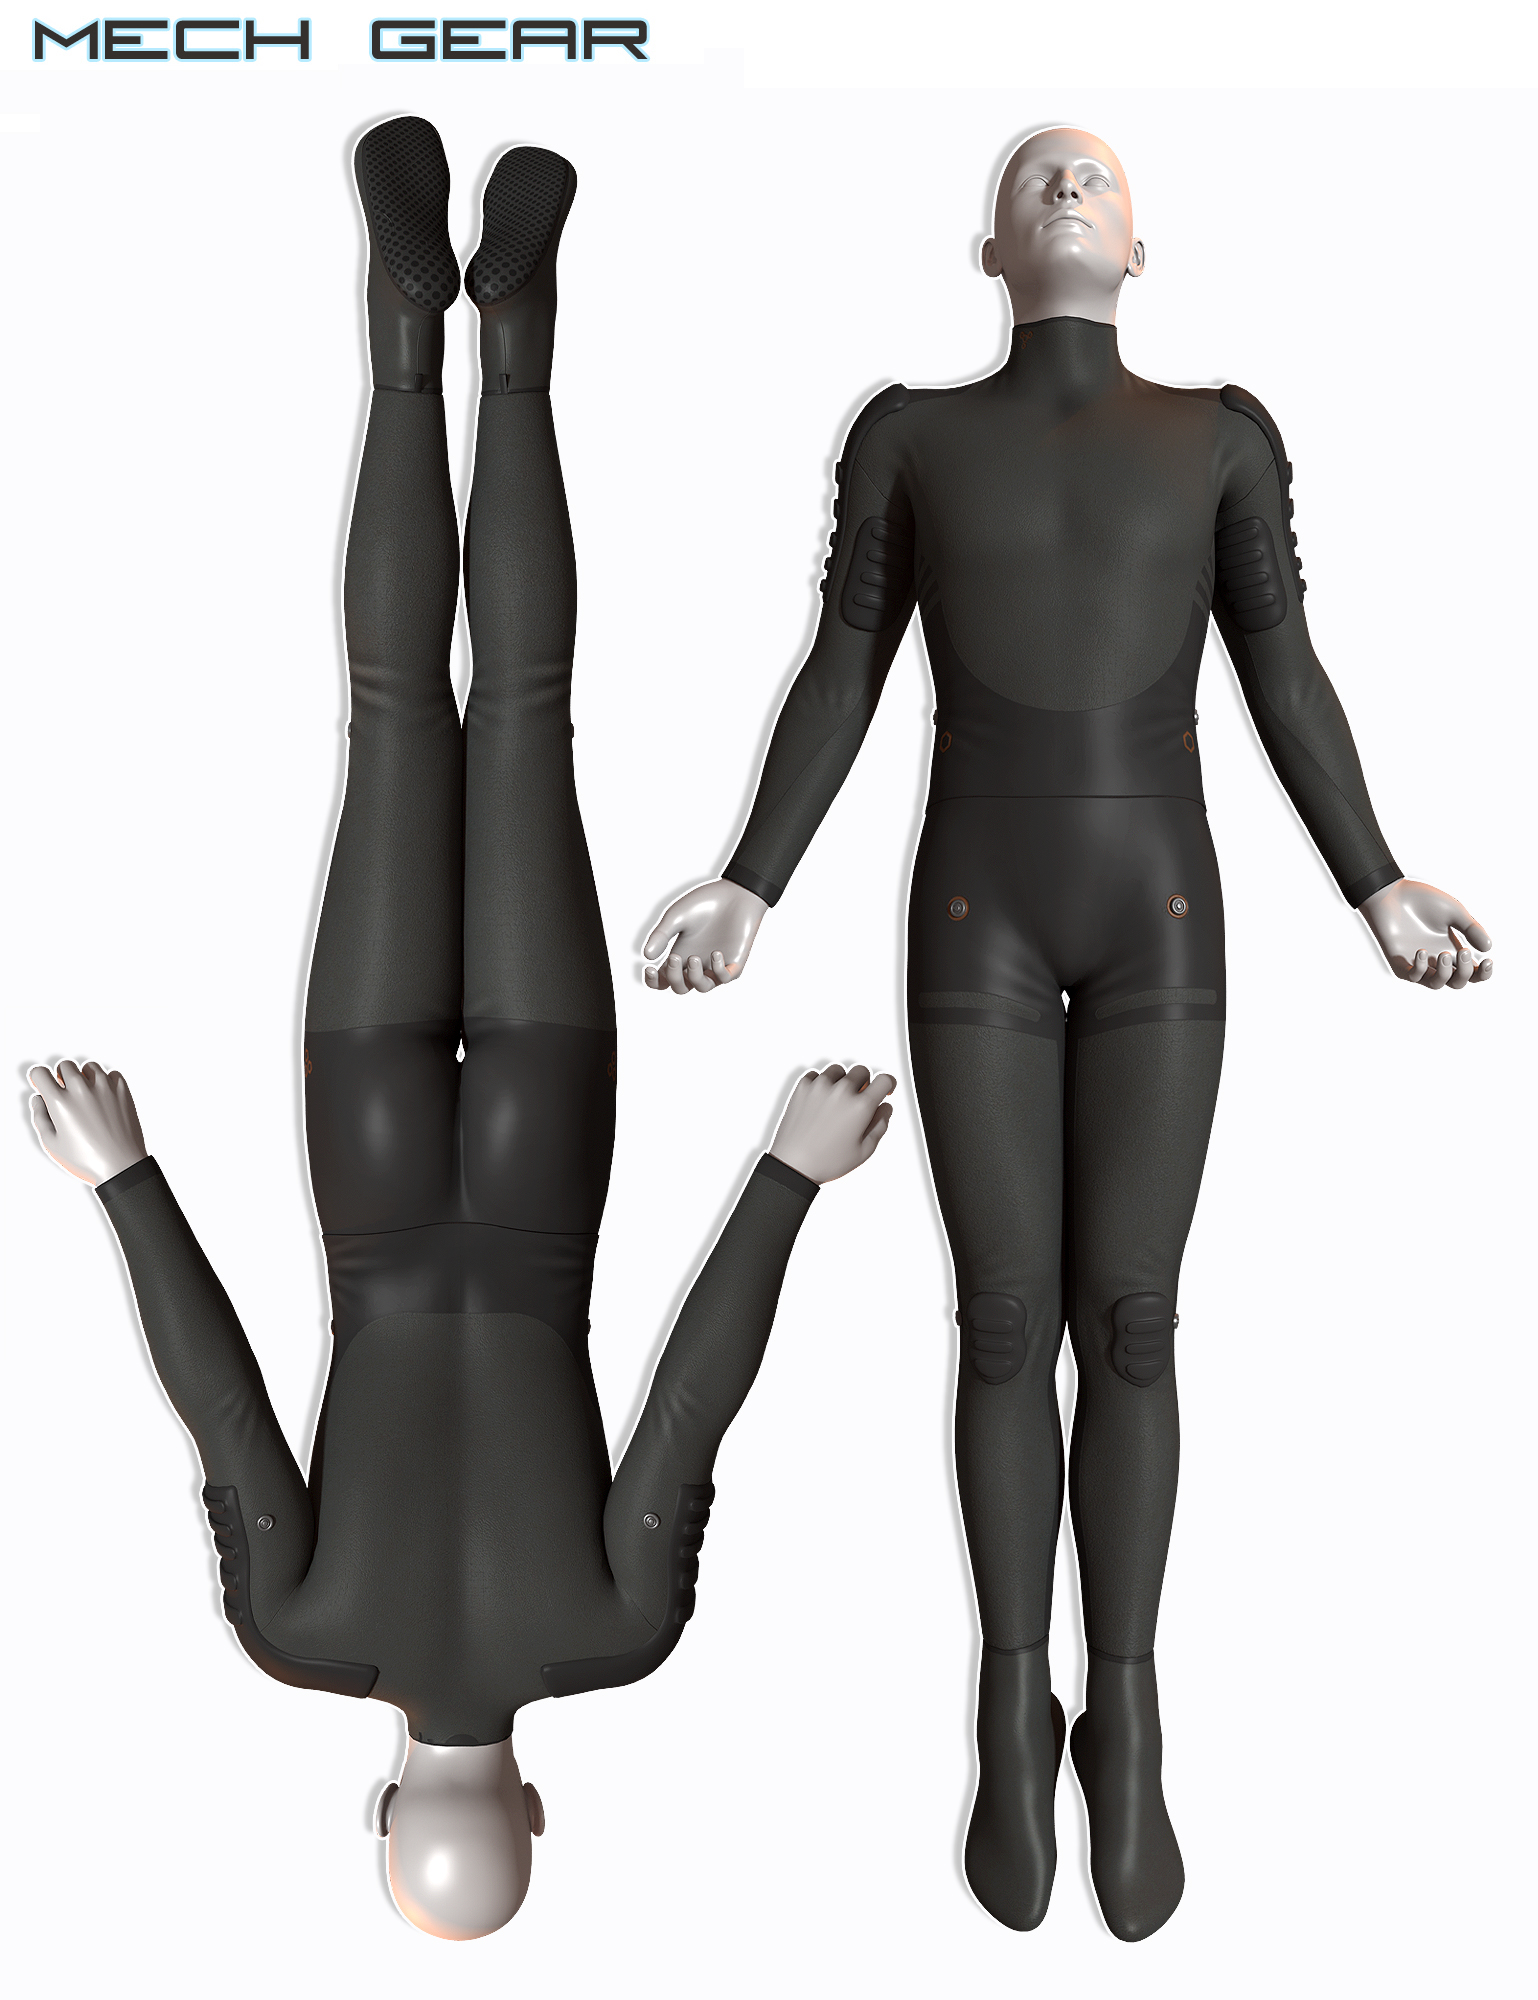 Mech Gear for Genesis 2 Male(s) by: SickleyieldThe AntFarm, 3D Models by Daz 3D